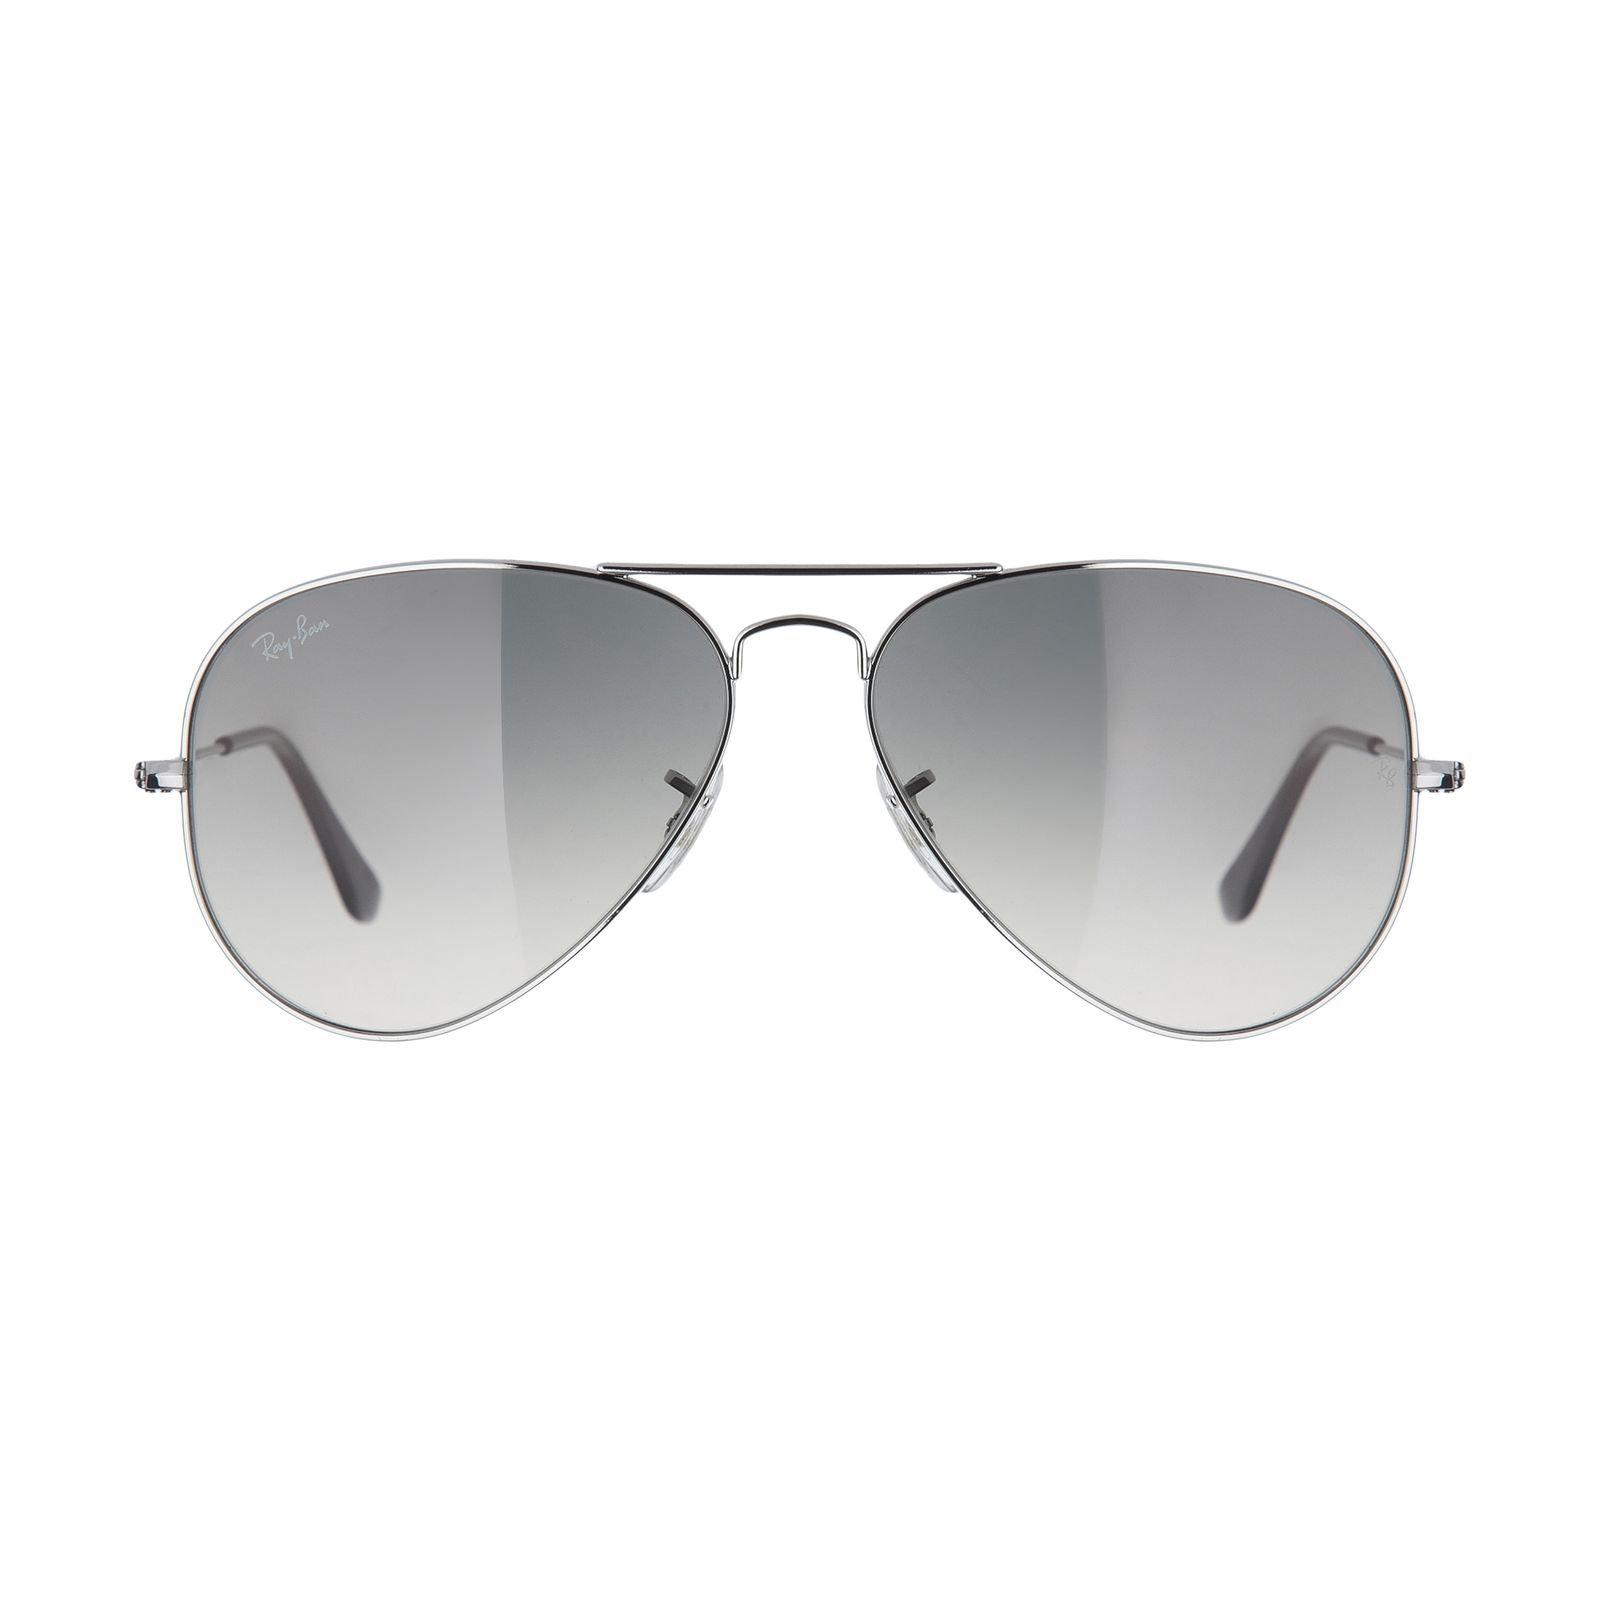 عینک آفتابی ری بن مدل 003/32-58 -  - 1